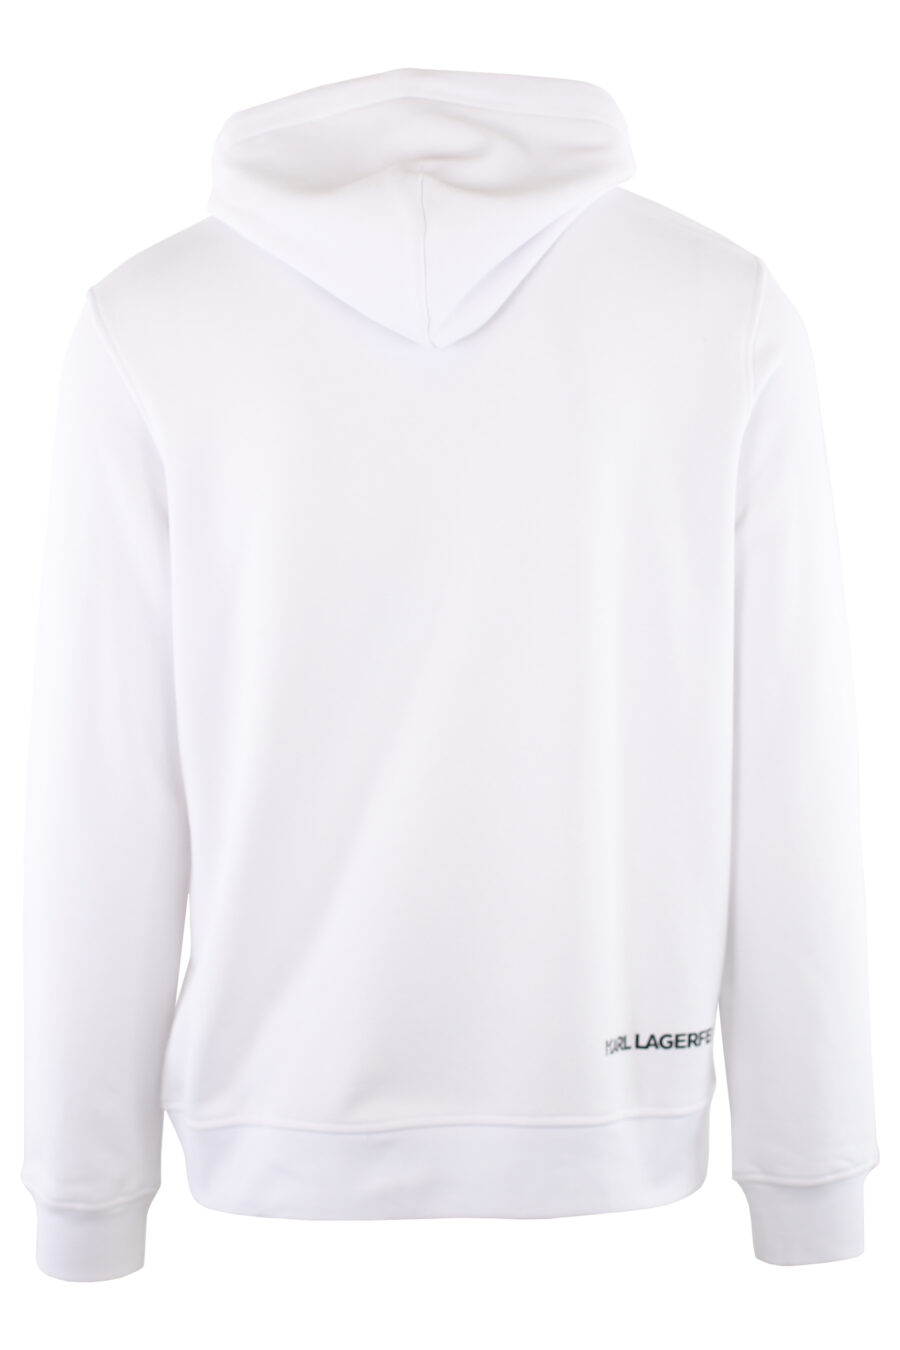 White sweatshirt with hood and logo "ikonik" small - IMG 7462